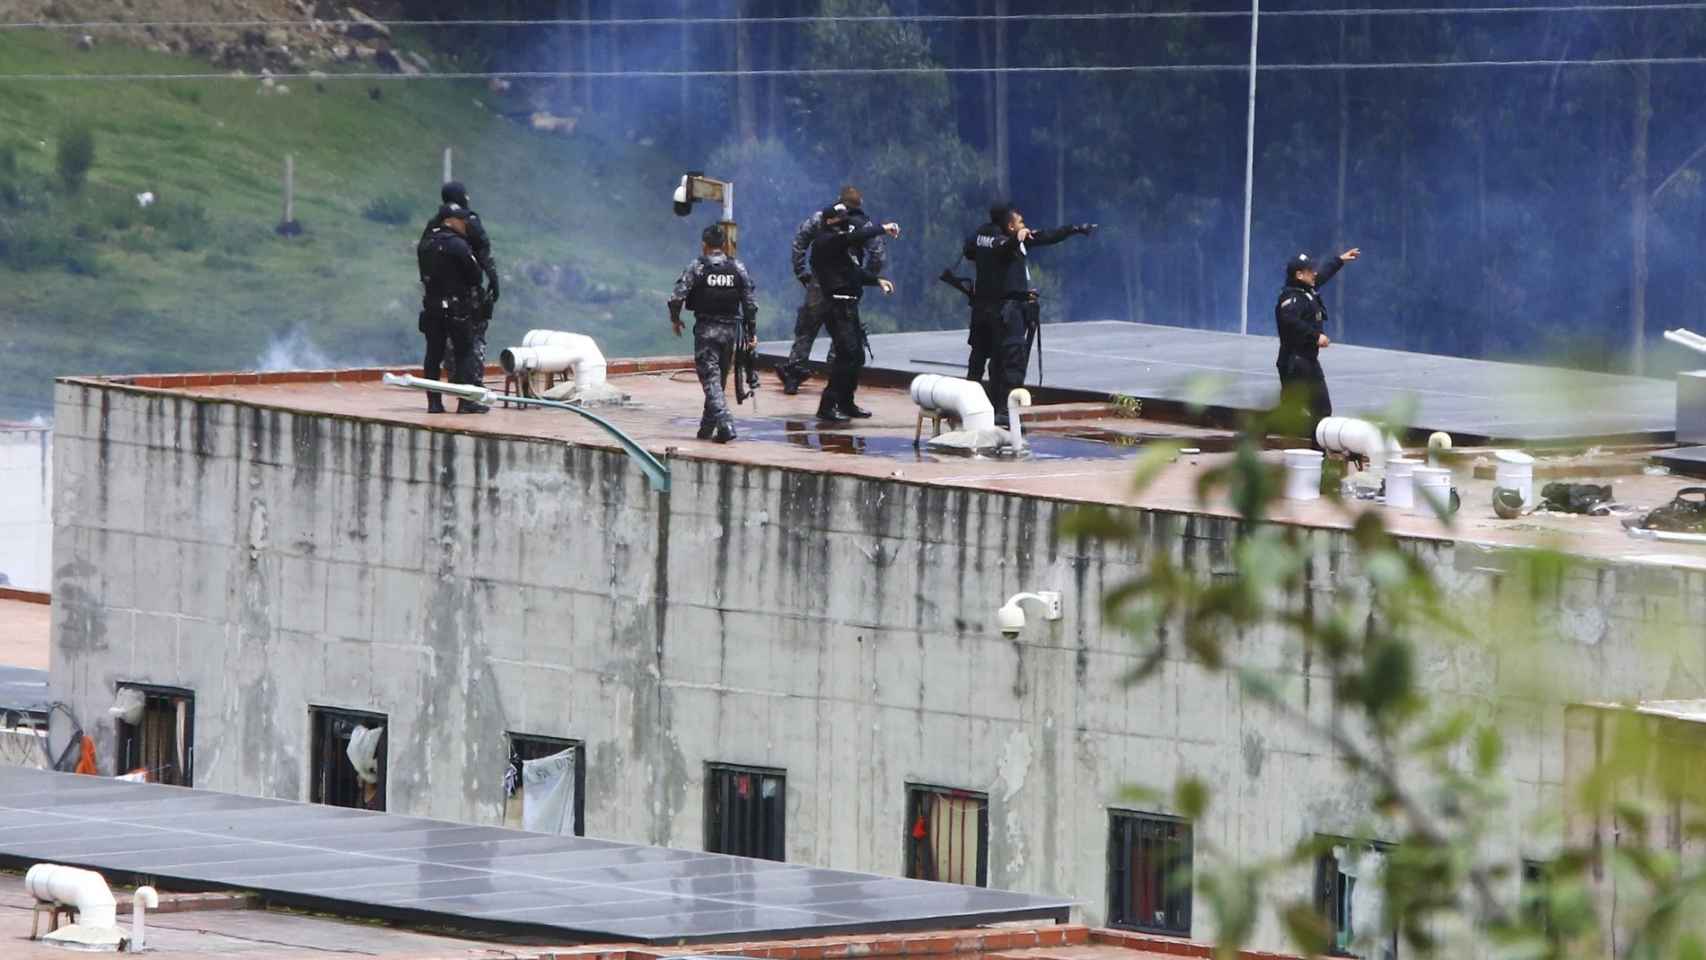 La policía toma posiciones en el techo de la prisión de Turi después de un motín mortal en la prisión de Cuenca, Ecuador.